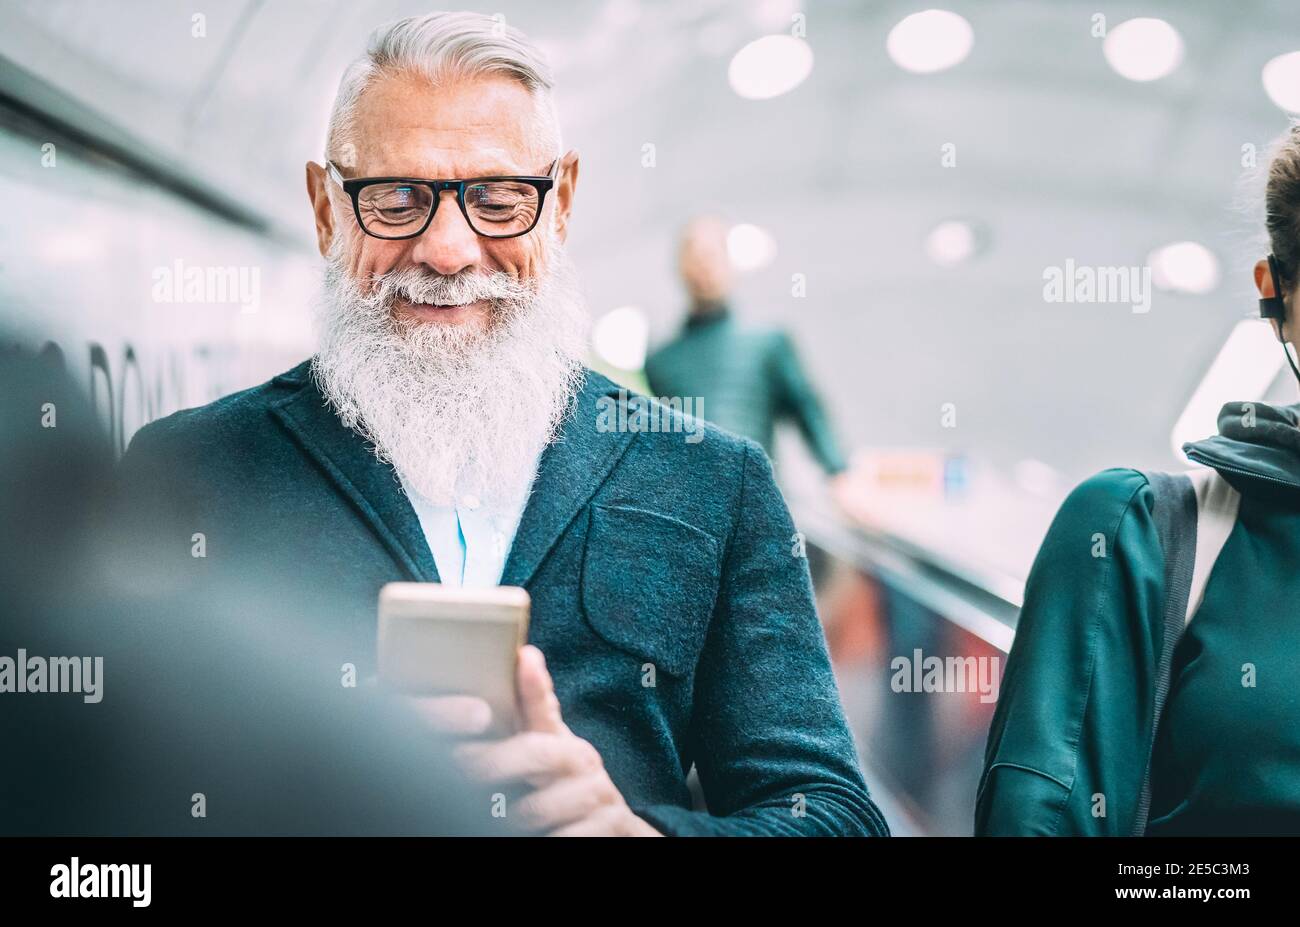 Un homme à barbe de taille basse utilisant un smartphone mobile dans un centre commercial Ascenseurs - personne à la mode partageant du contenu avec un téléphone intelligent Banque D'Images